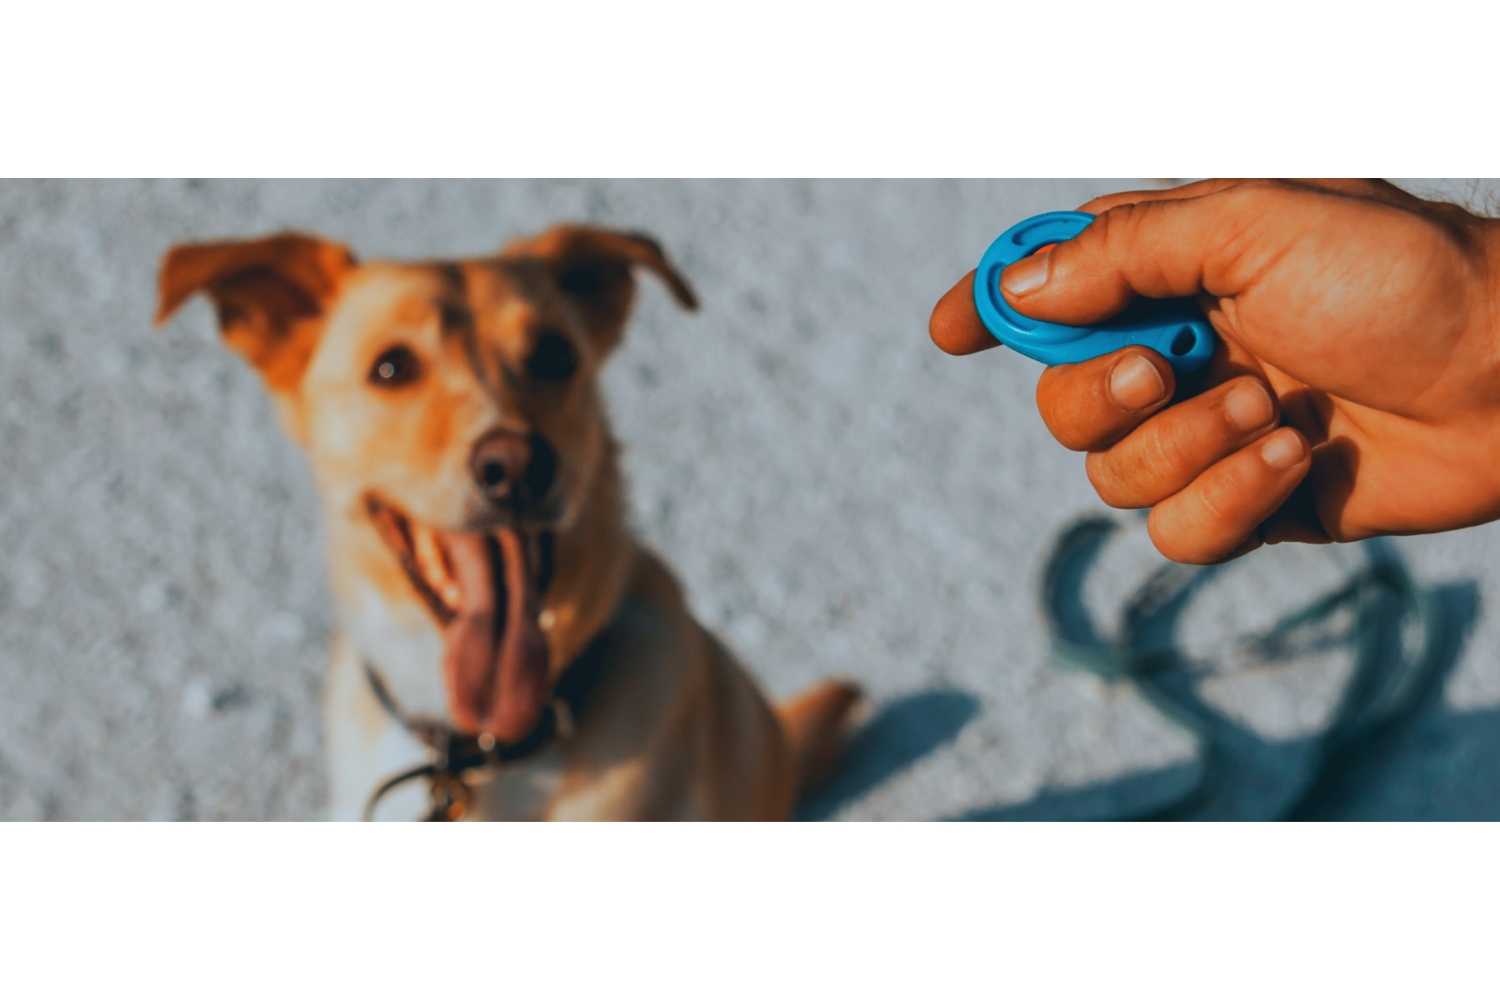 Wil jij graag op een positieve manier trainen met jouw hond? Dan is trainen door middel van een clicker de methode voor jou. Door de trainen met een clicker kan je heel precies bepaald gedrag markeren en belonen.